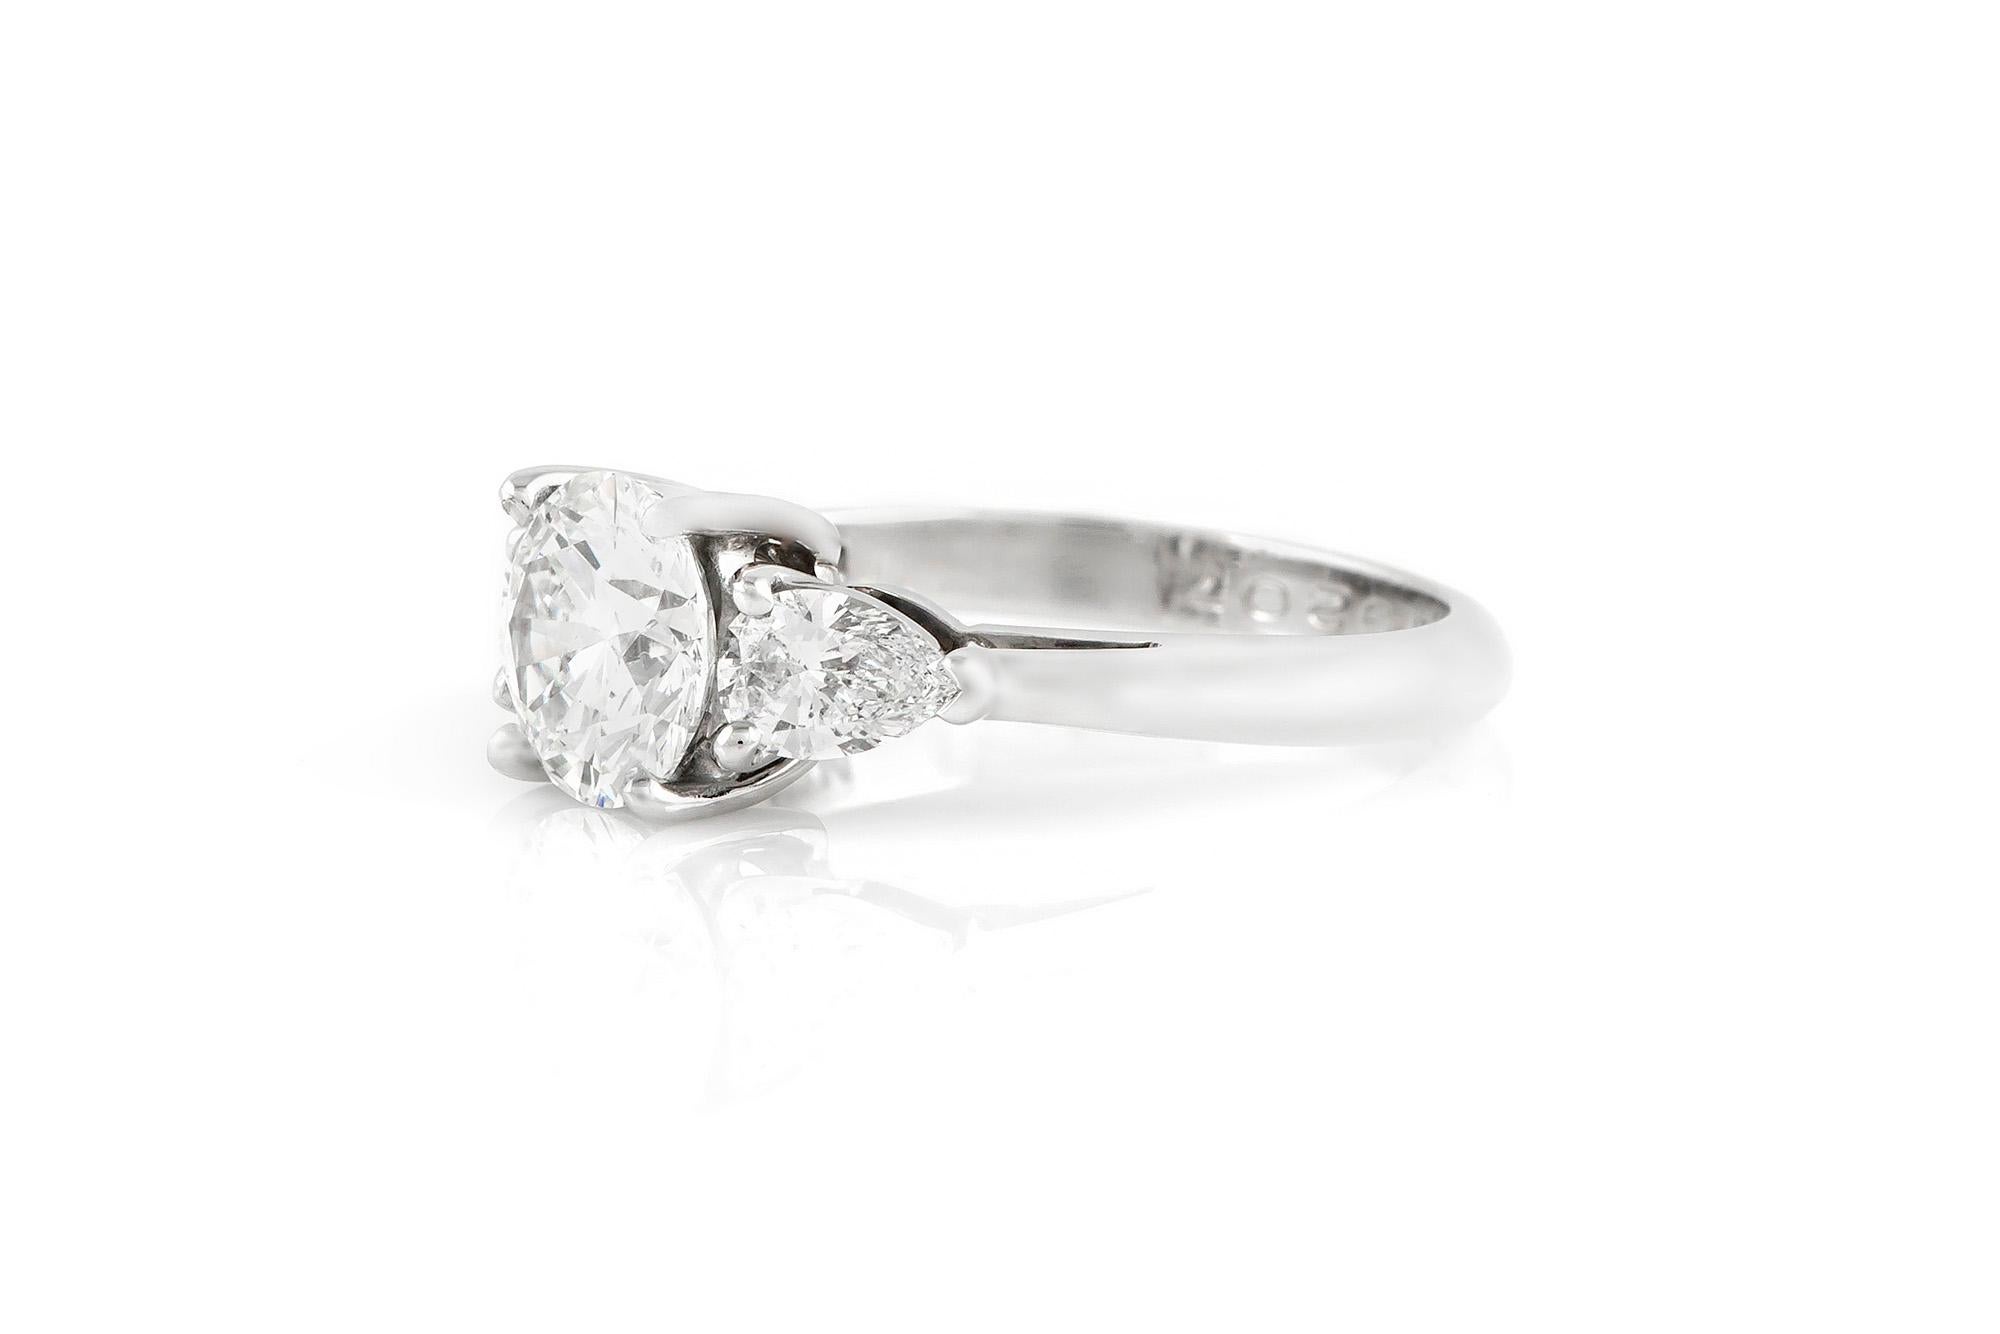 Signierter Verlobungsring von Tiffany & Co. aus Platin, fein gearbeitet. Runder Diamant im Brillantschliff, Farbe E, Reinheit VS1, Gesamtgewicht 1,50 Karat. 